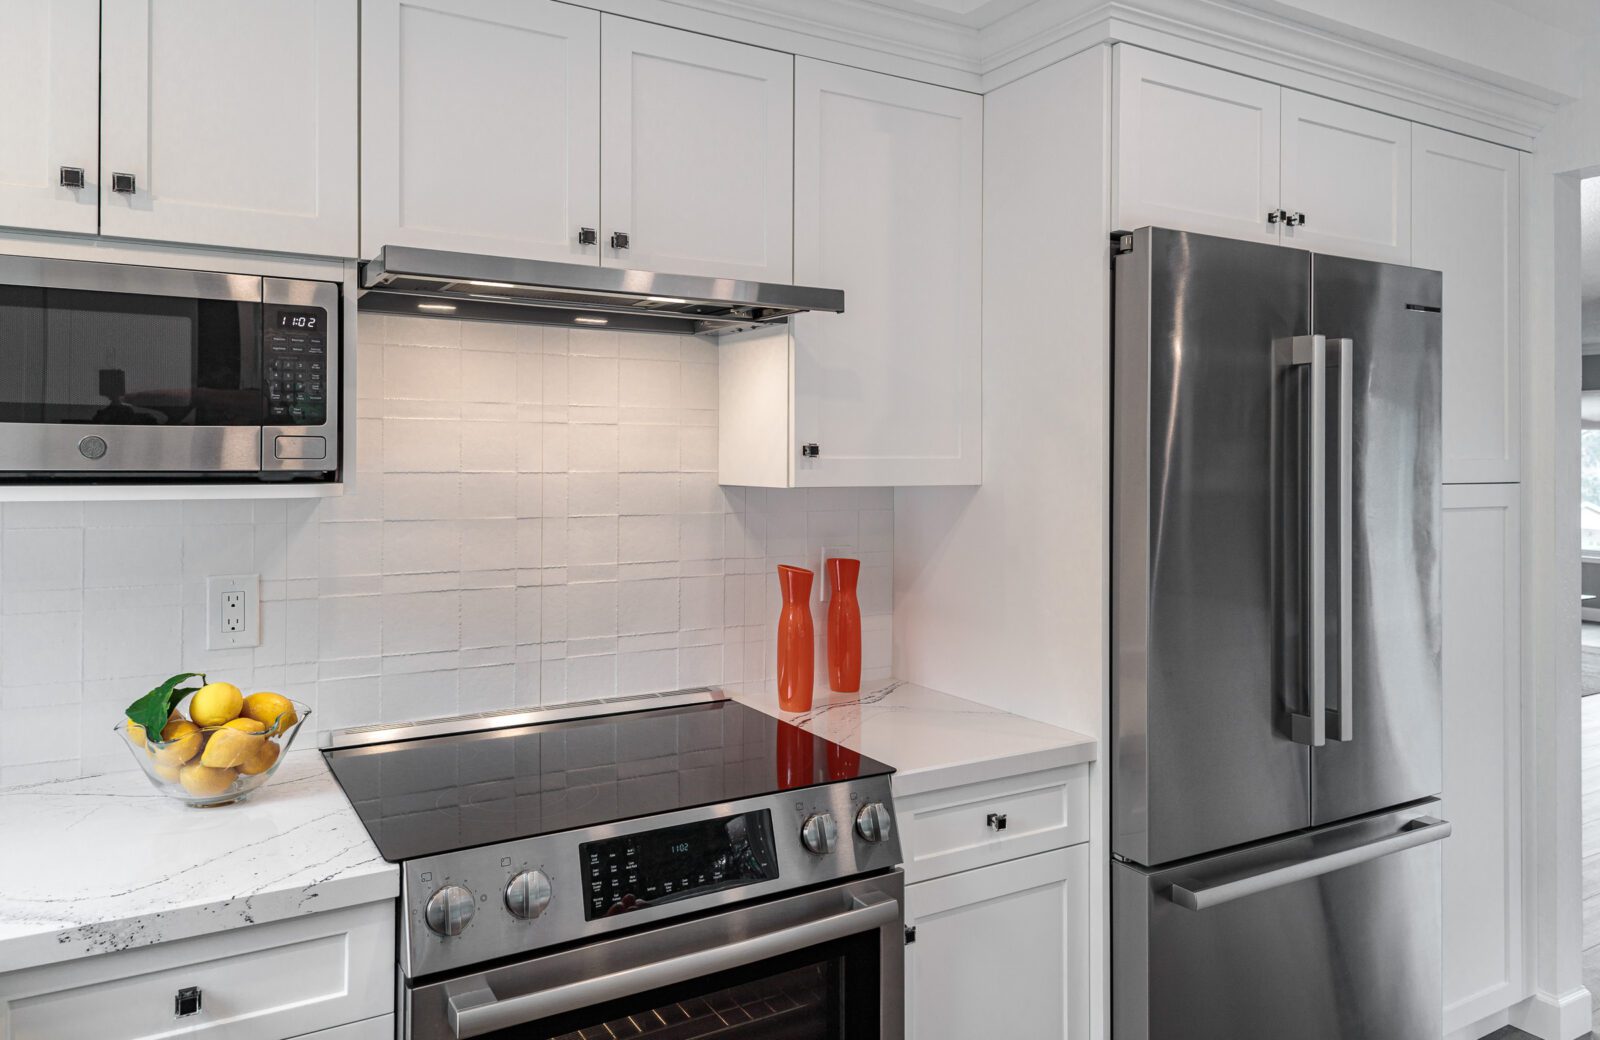 White cabinets, stainless steel appliances, textured matte white tile backsplash, slimline hood